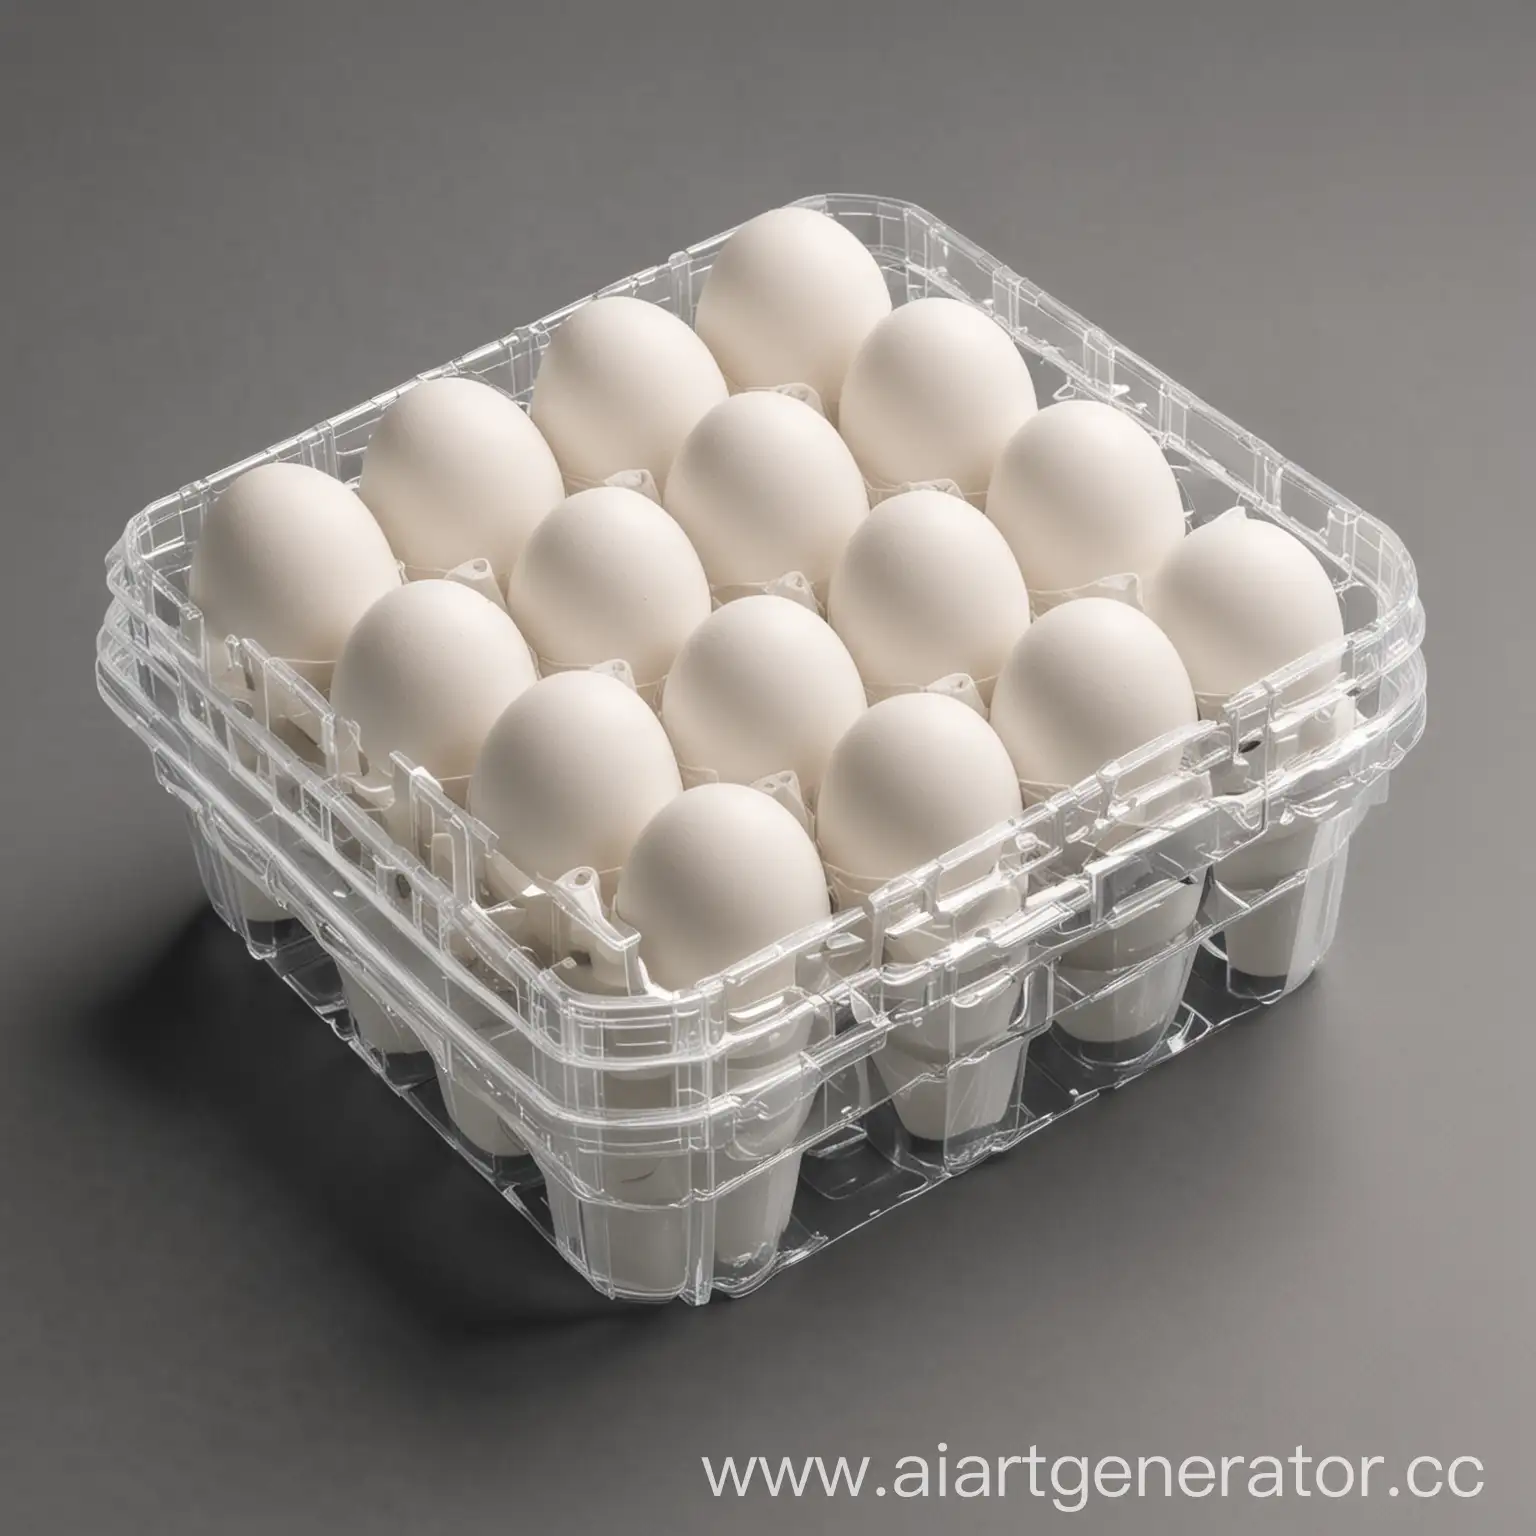 контейнер для яиц интересной формы в аксонометрии, контейнер из пластика